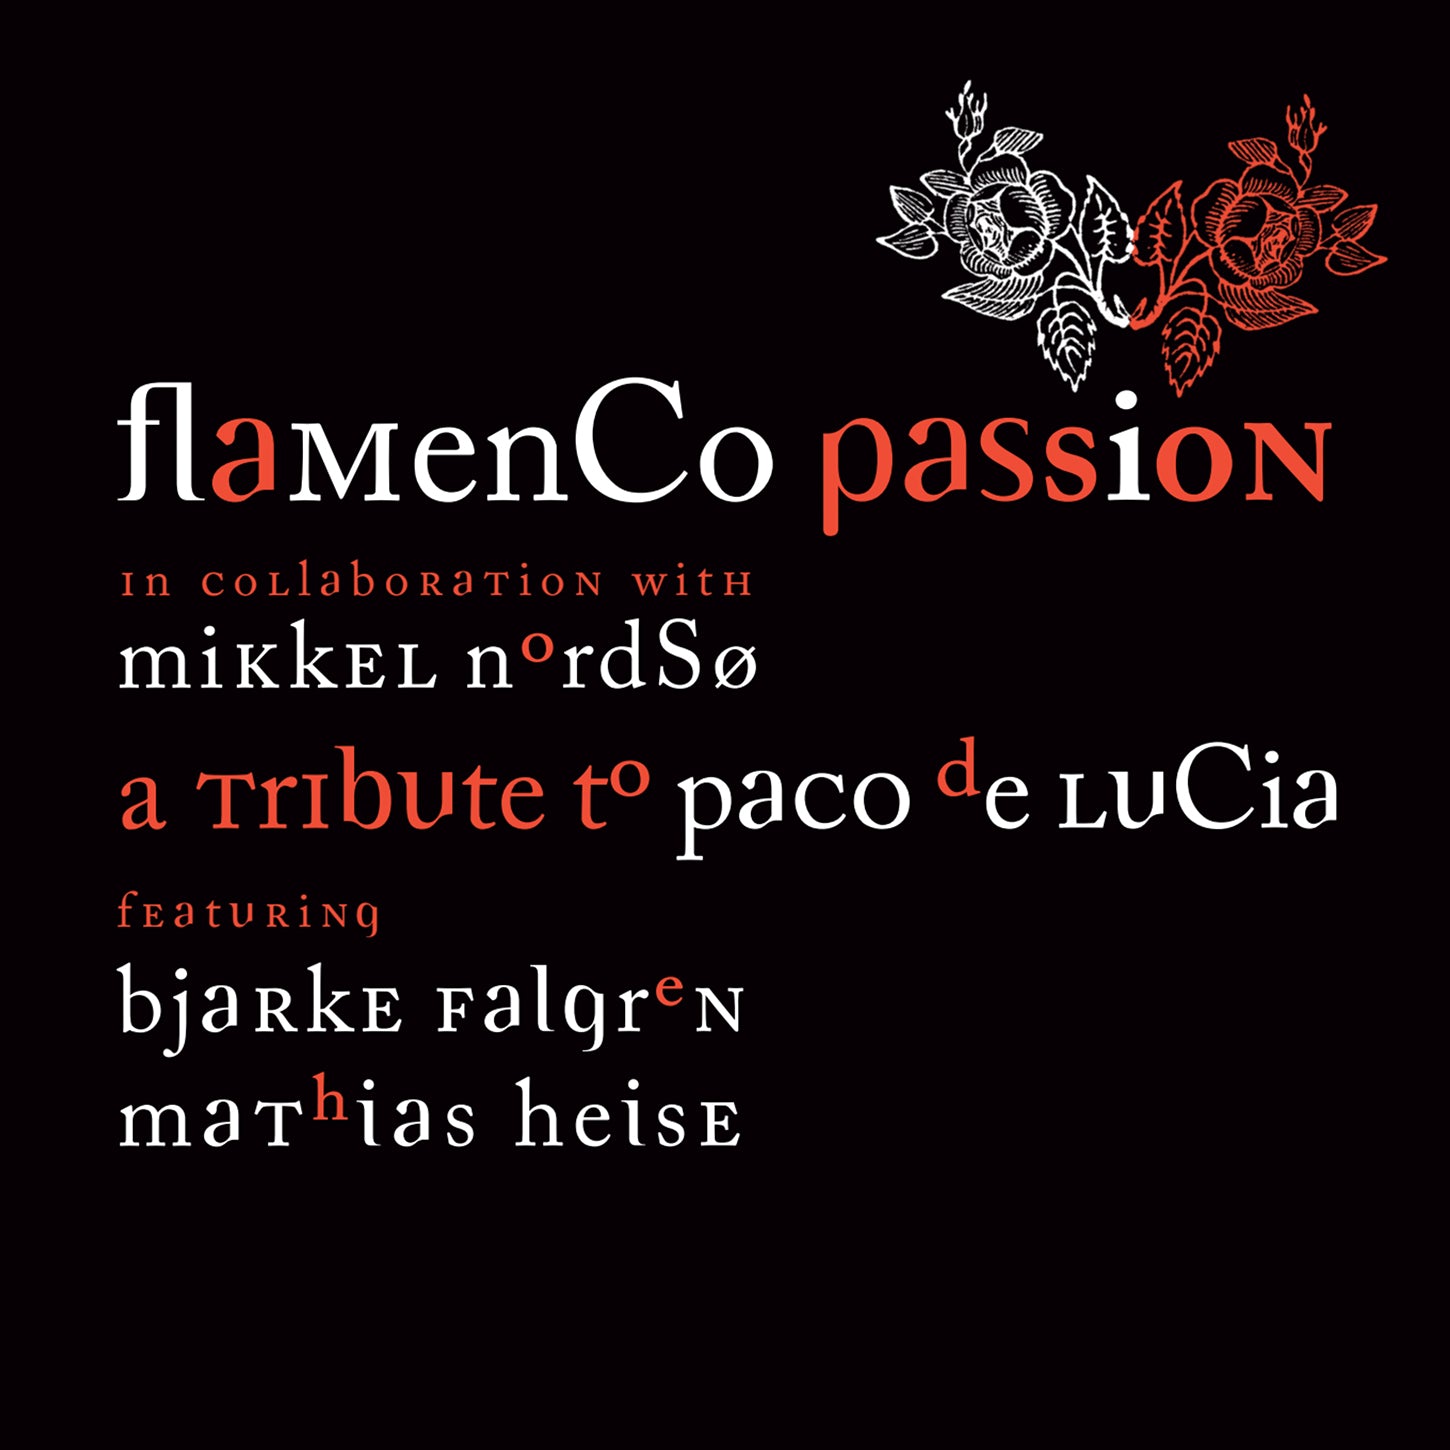 A Tribute to Paco de Lucia / Flamenco Passion